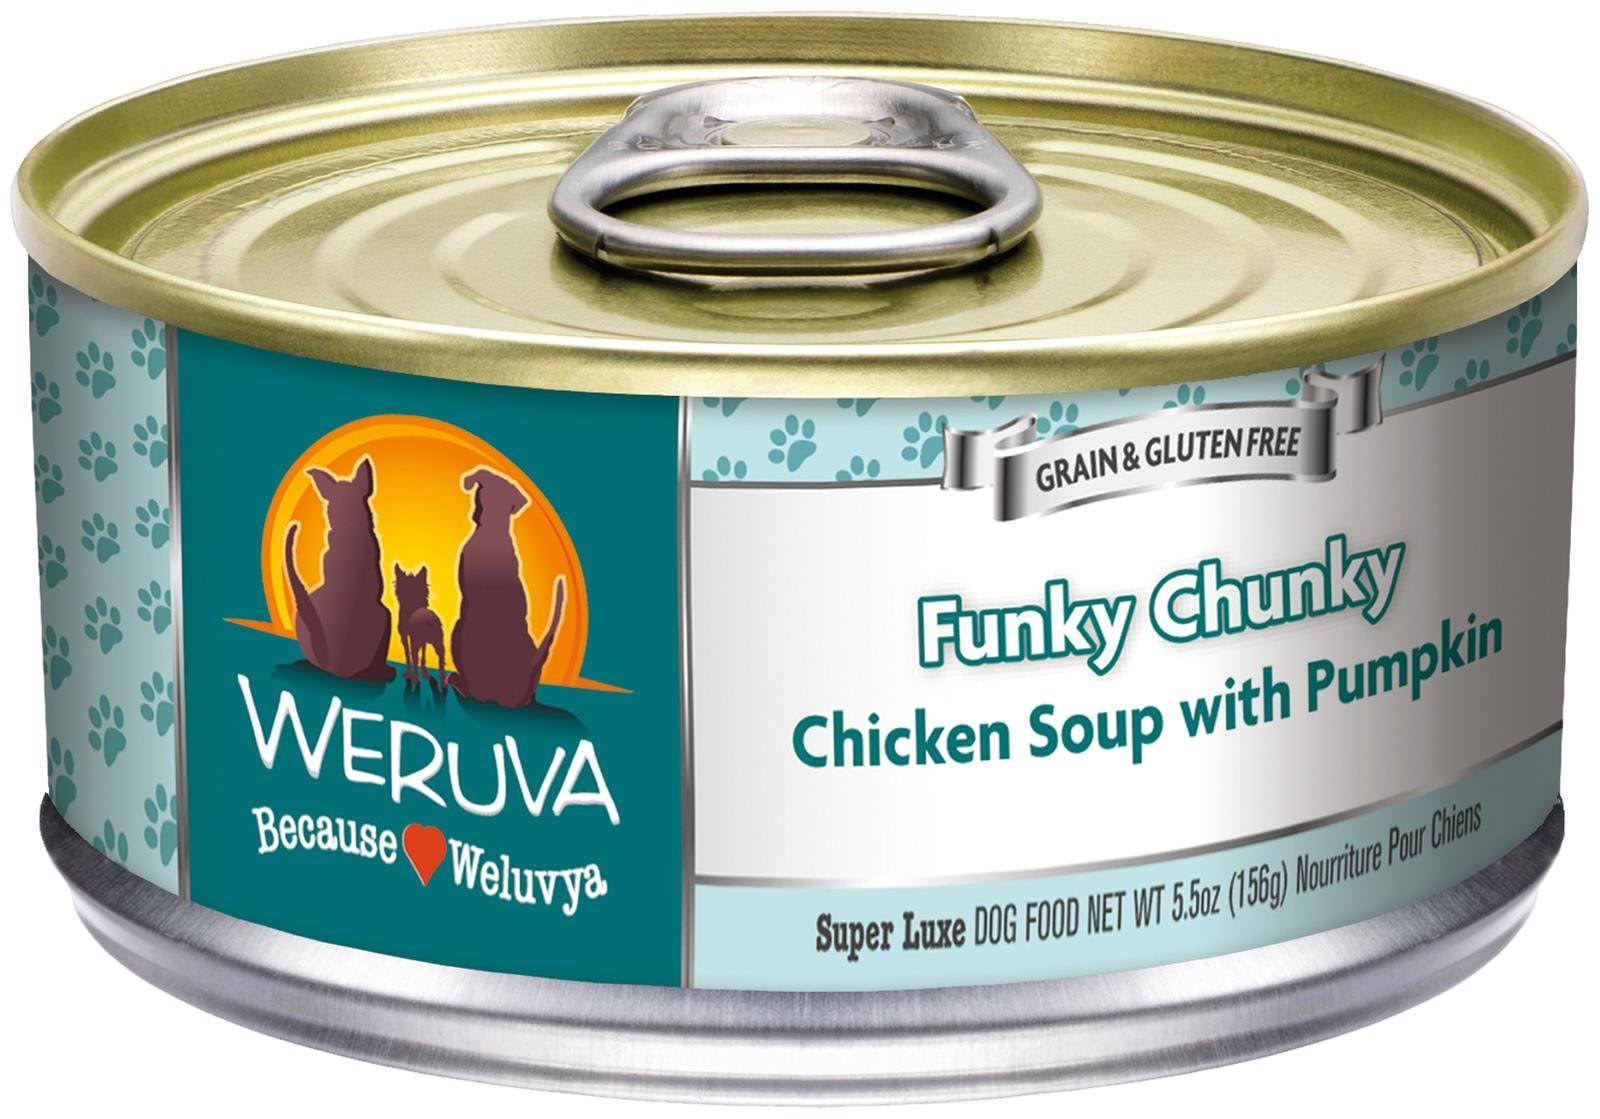 Weruva Funky Chunky Dog Food - Chicken Soup, 5.5oz, 24pk